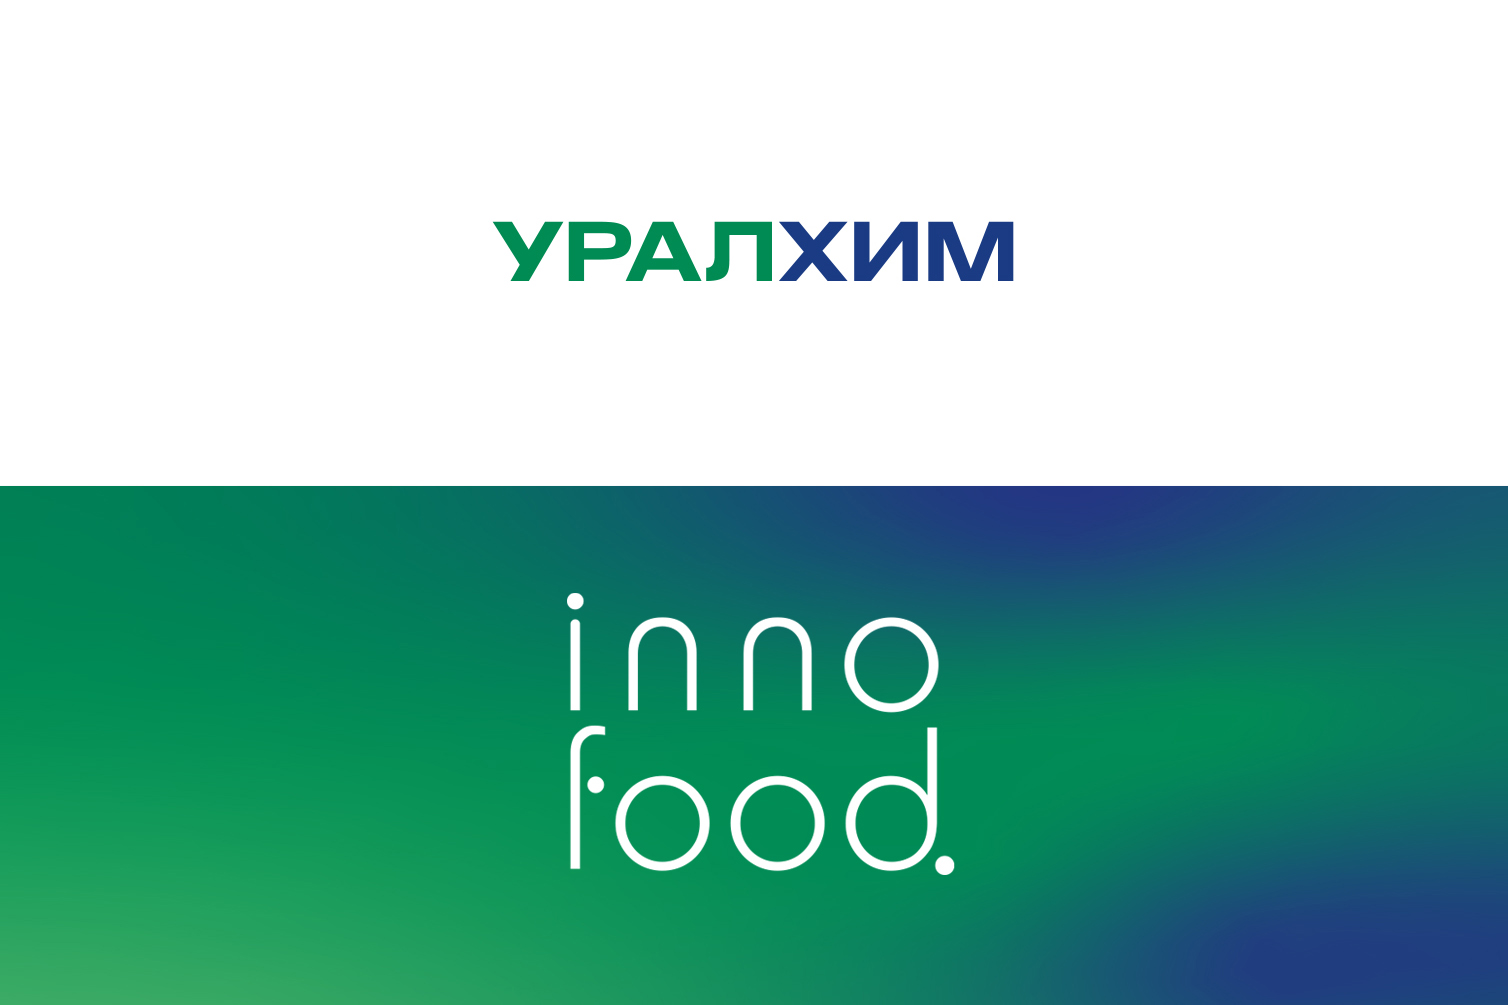 «Уралхим» представит инновационные разработки на форуме INNOFOOD